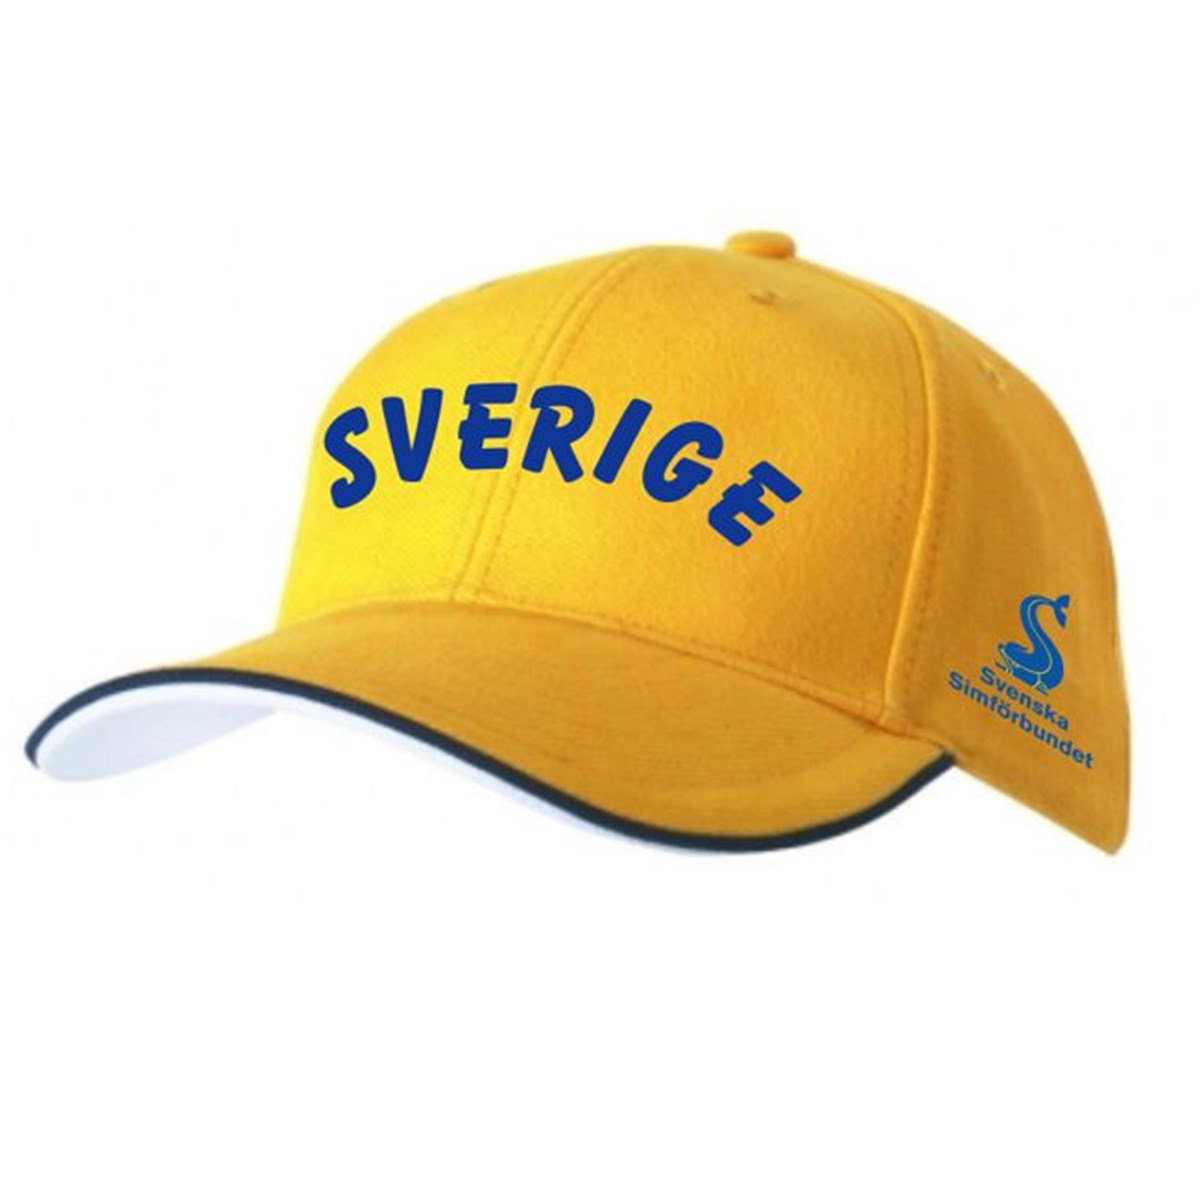 Keps "Sverige"